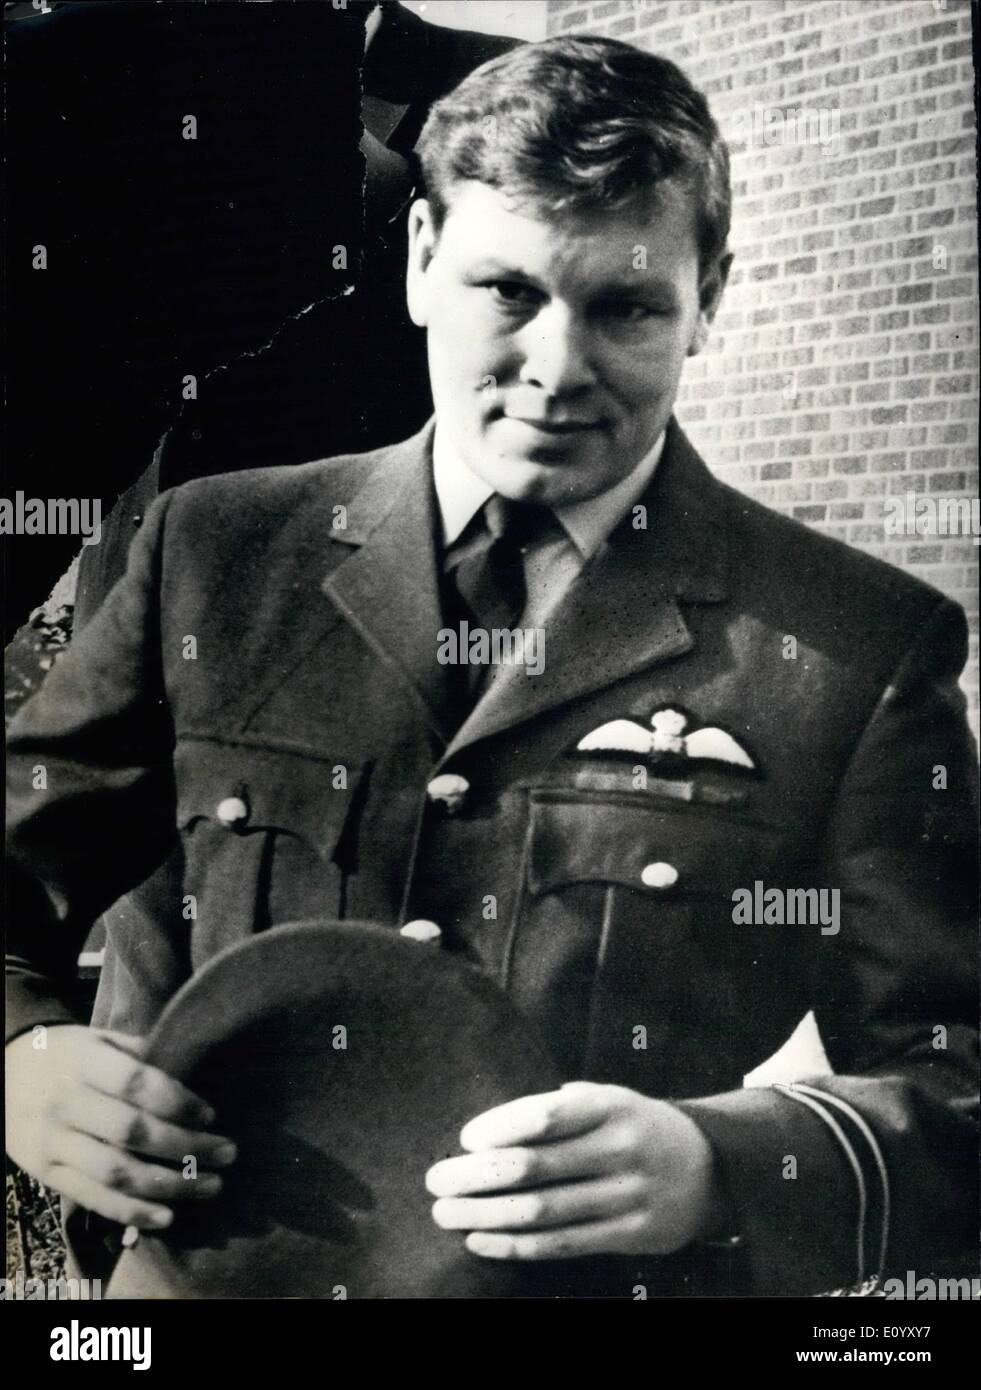 El 10 de octubre, 1971 - R.A.F. ''Desiertas oficial para volar misiones de misericordia''.: Vuelo Teniente Terence Peet desrted como un piloto de la RAF de seis años de edad para volar misiones de misericordia en África y salvado cientos de vidas, se dijo ayer en su corte marcial en Innesworth, Gleucestershire. El Teniente de Vuelo Peet, de 36 años, quien se declaró culpable de desertar en 1965 de la RAF, Shrepshire ternhill, escribió Foto de stock